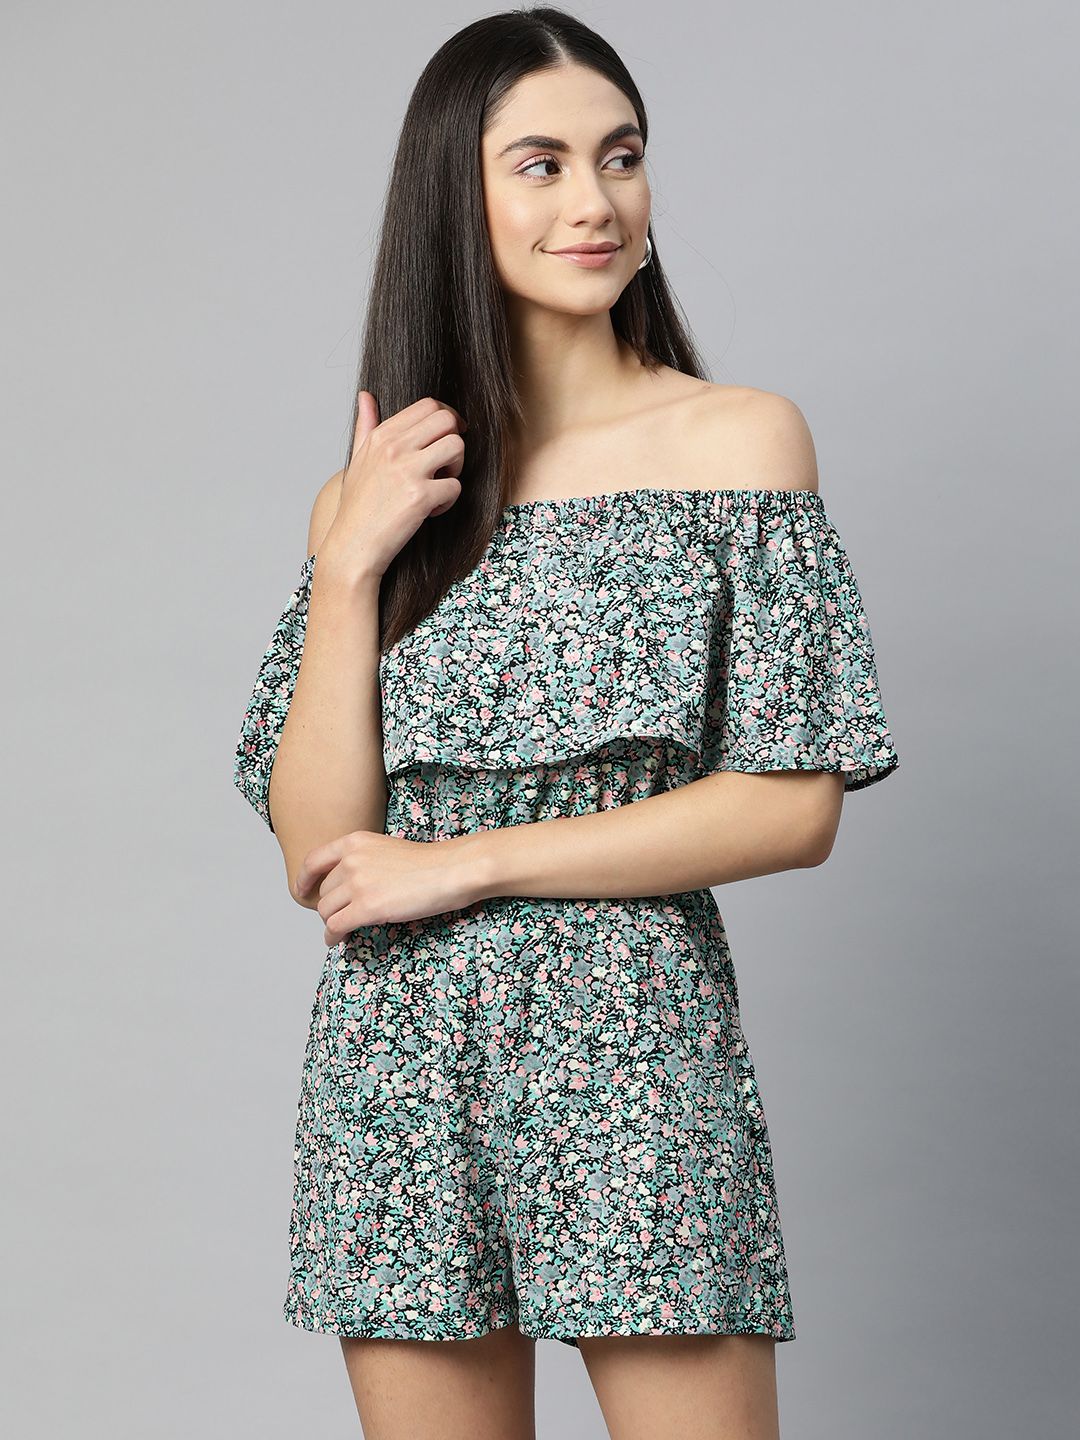 SIRIKIT Black & Blue Off-Shoulder Floral Printed Jumpsuit Price in India